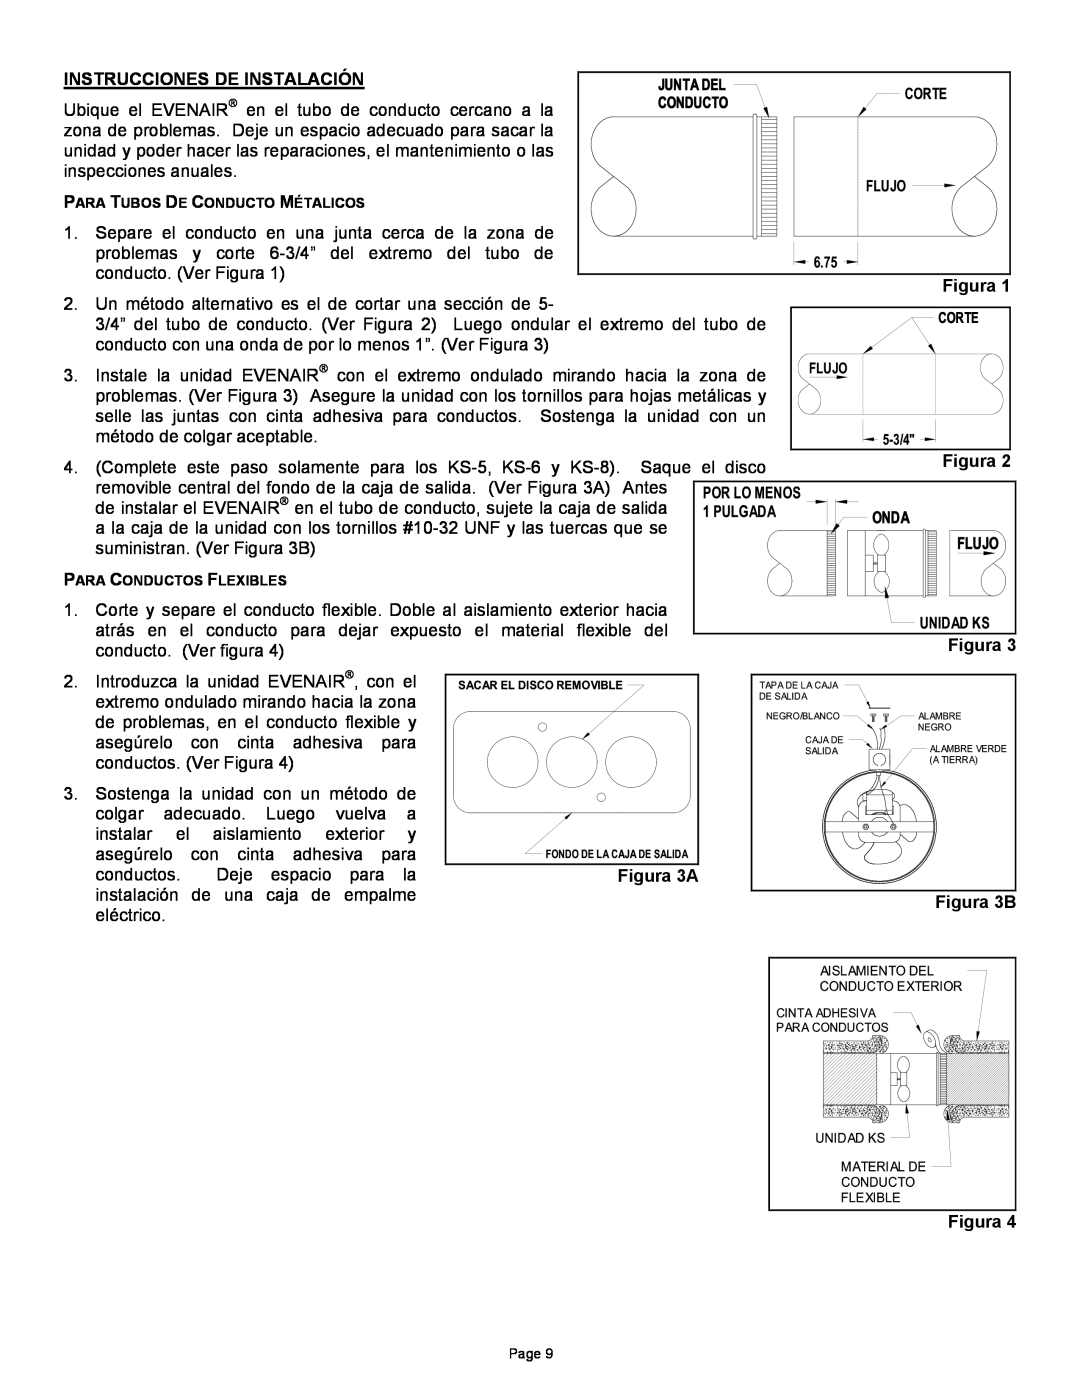 Field Controls TB26TB manual Instrucciones De Instalación, Figura 3A, Figura Figura 3B 